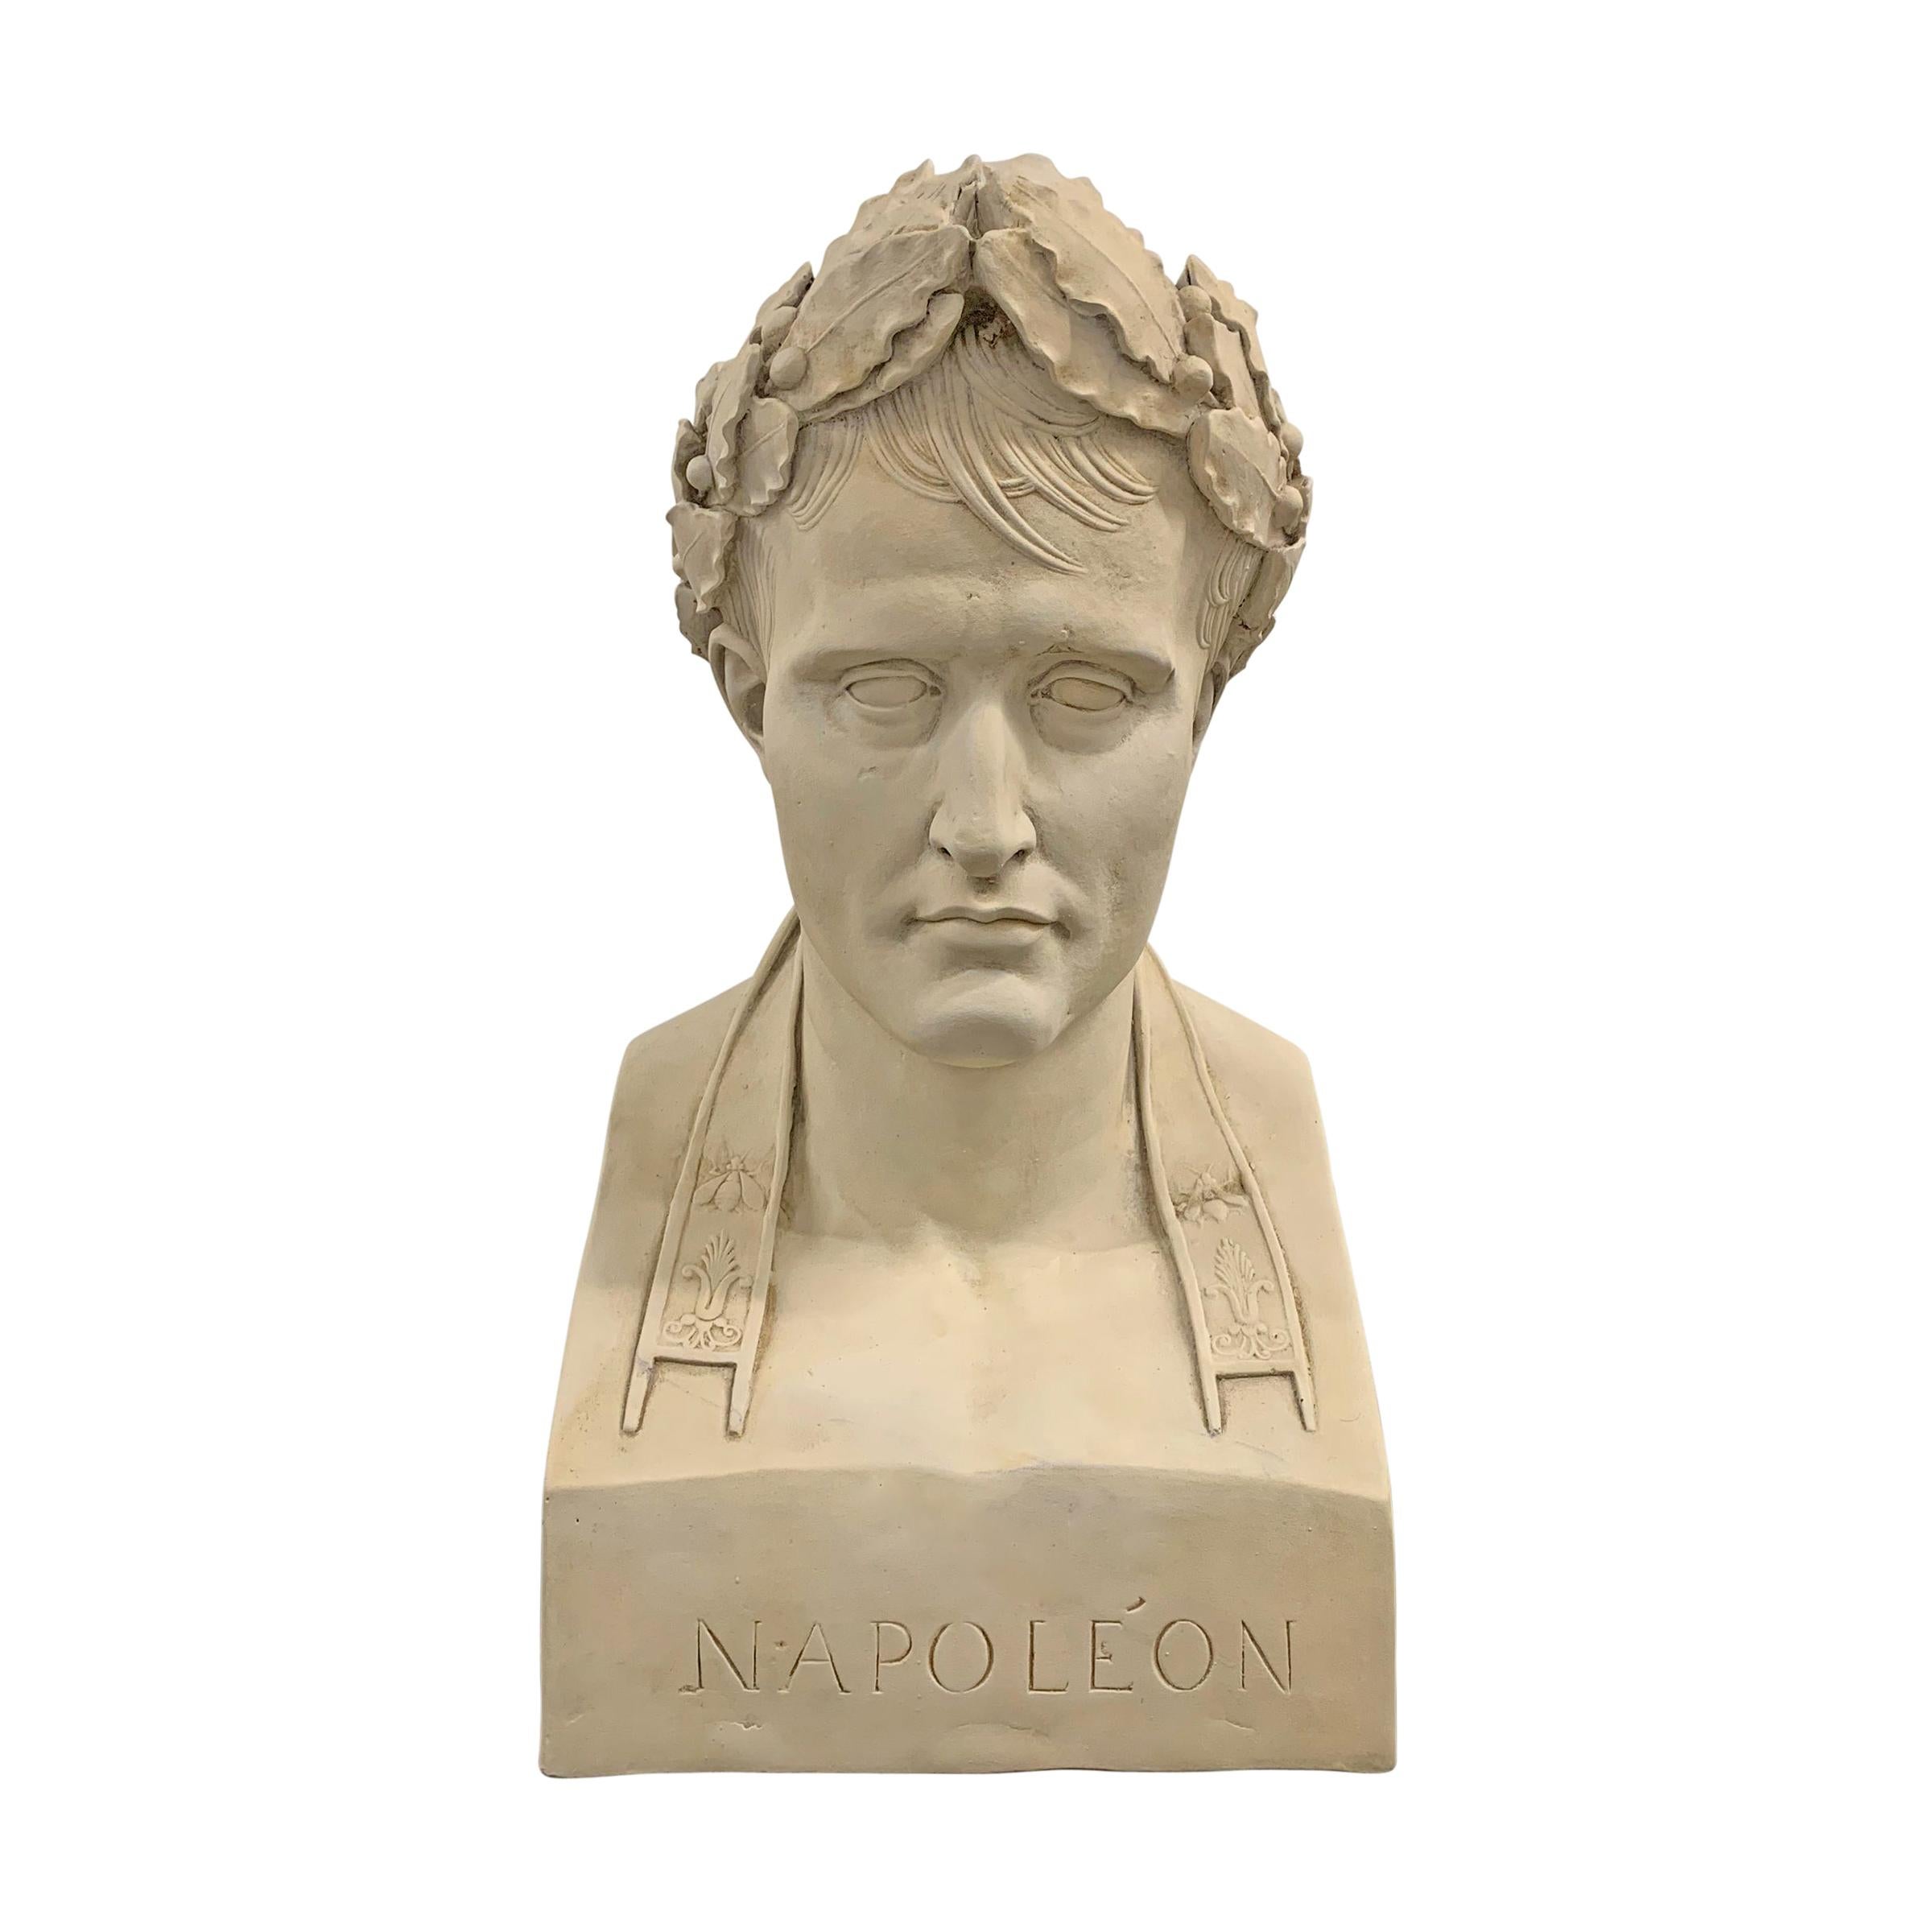 Napoléon Portrait Bust